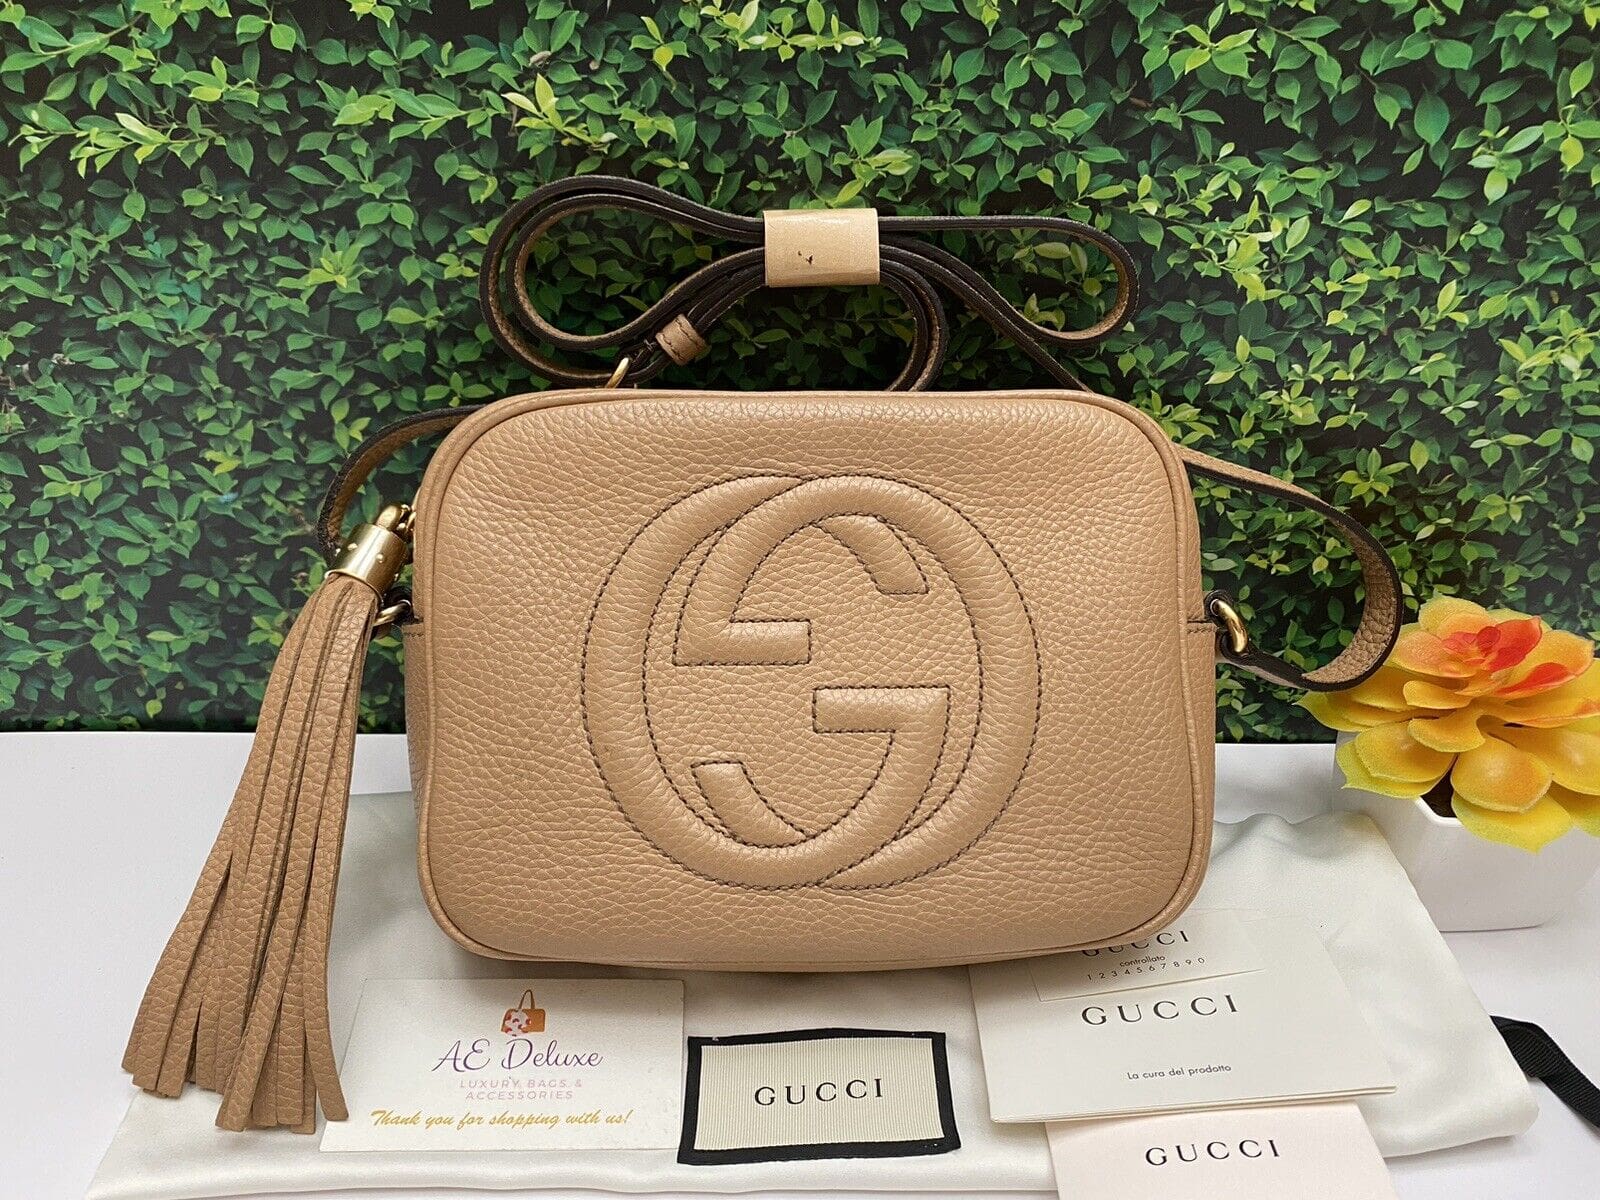 Gucci Boston Bag - Reetzy